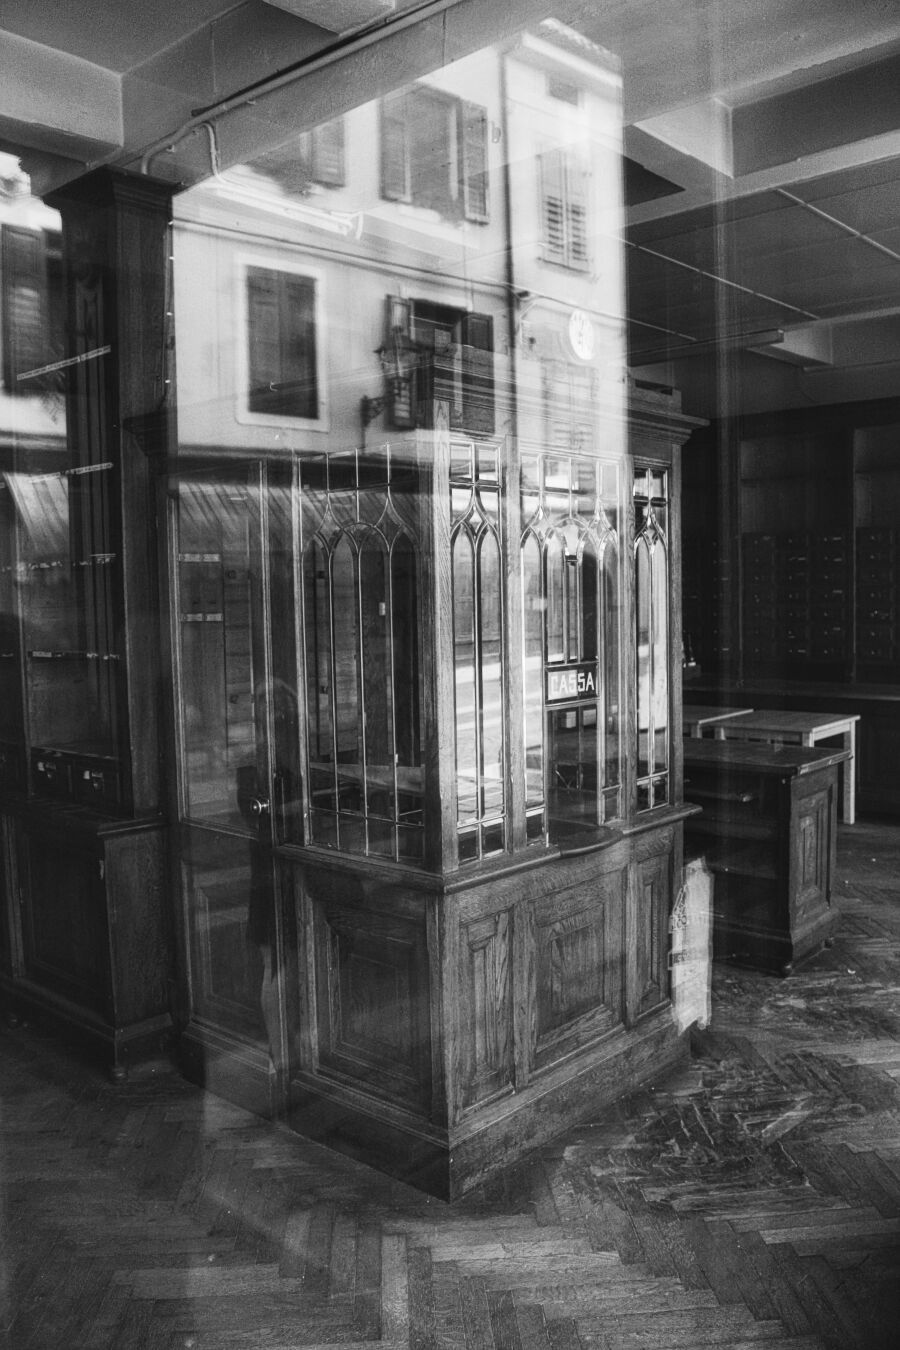 Empty old shop

#reflections #blackandwhitephotography #gorizia #friaul